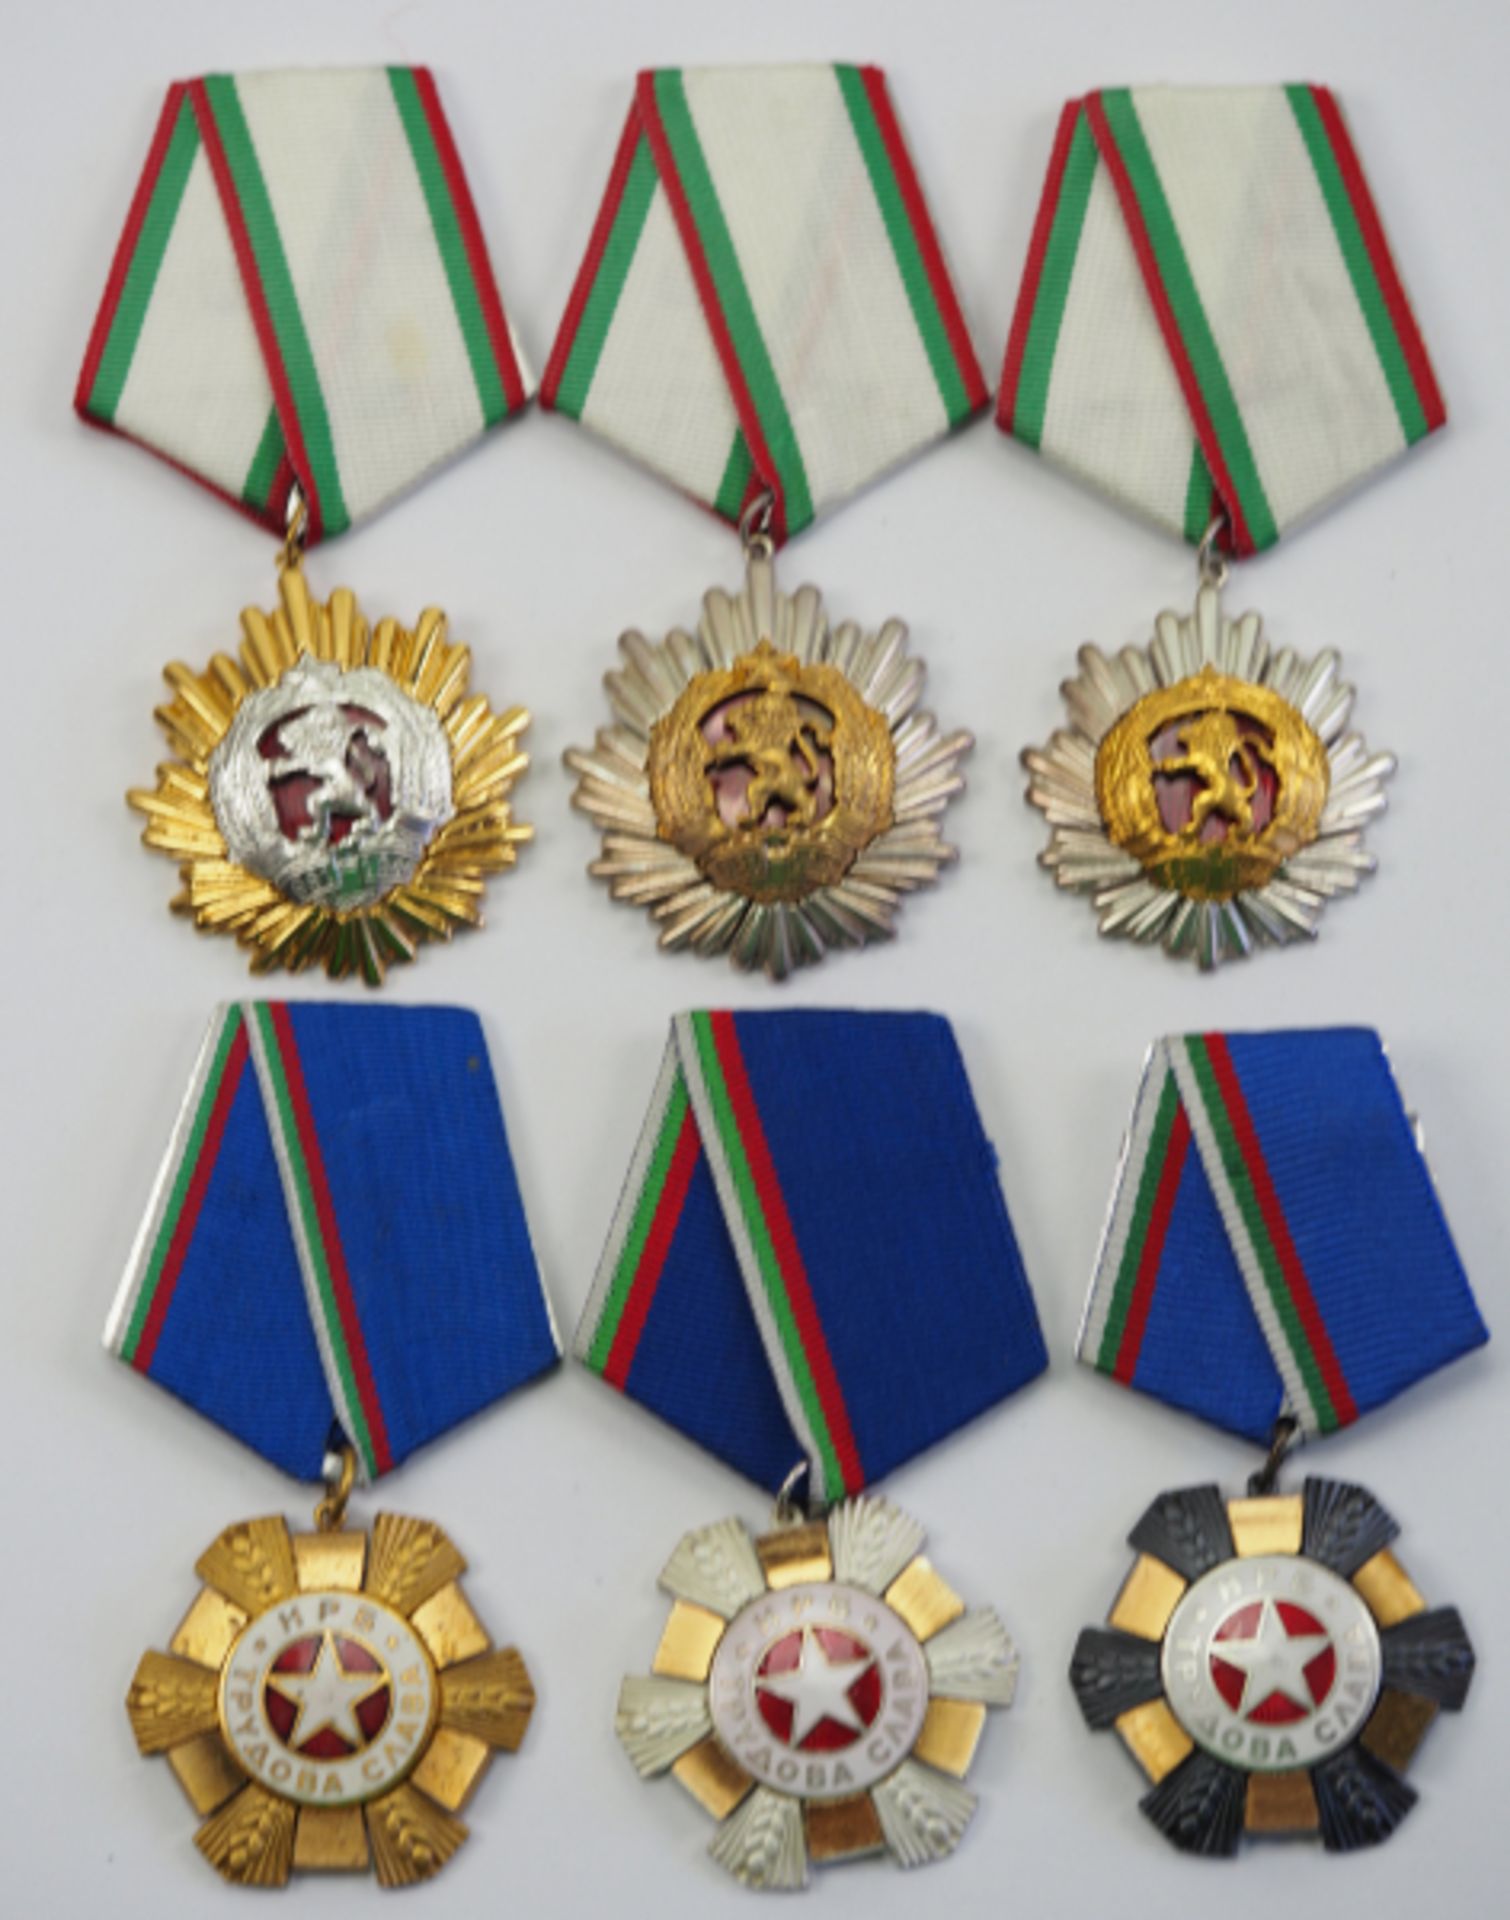 Bulgarien: Lot von 6 Auszeichnungen.1.) Orden der Volksrepublik von Bulgarien, 1. Klasse, 2.)